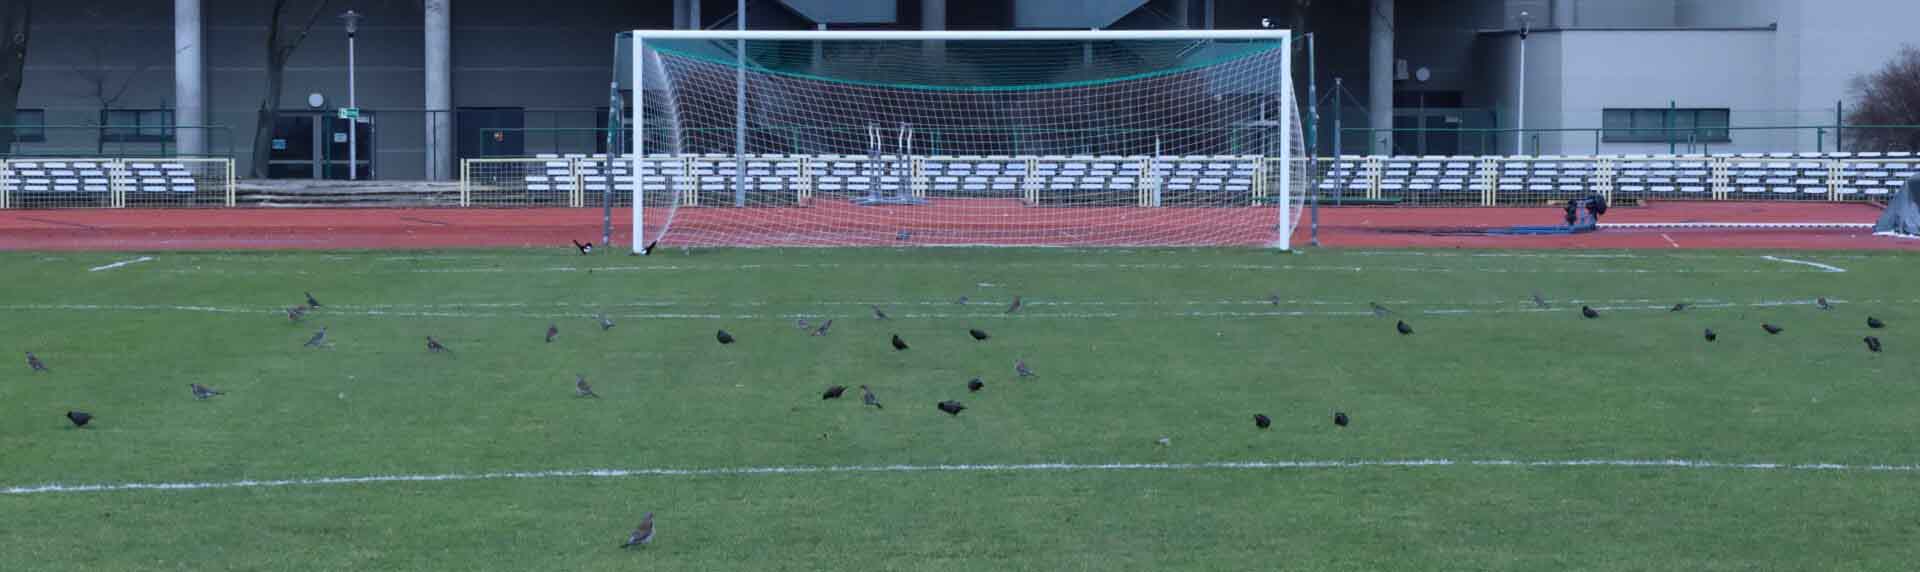 Ptaki spacerujące po boisku piłkarskim